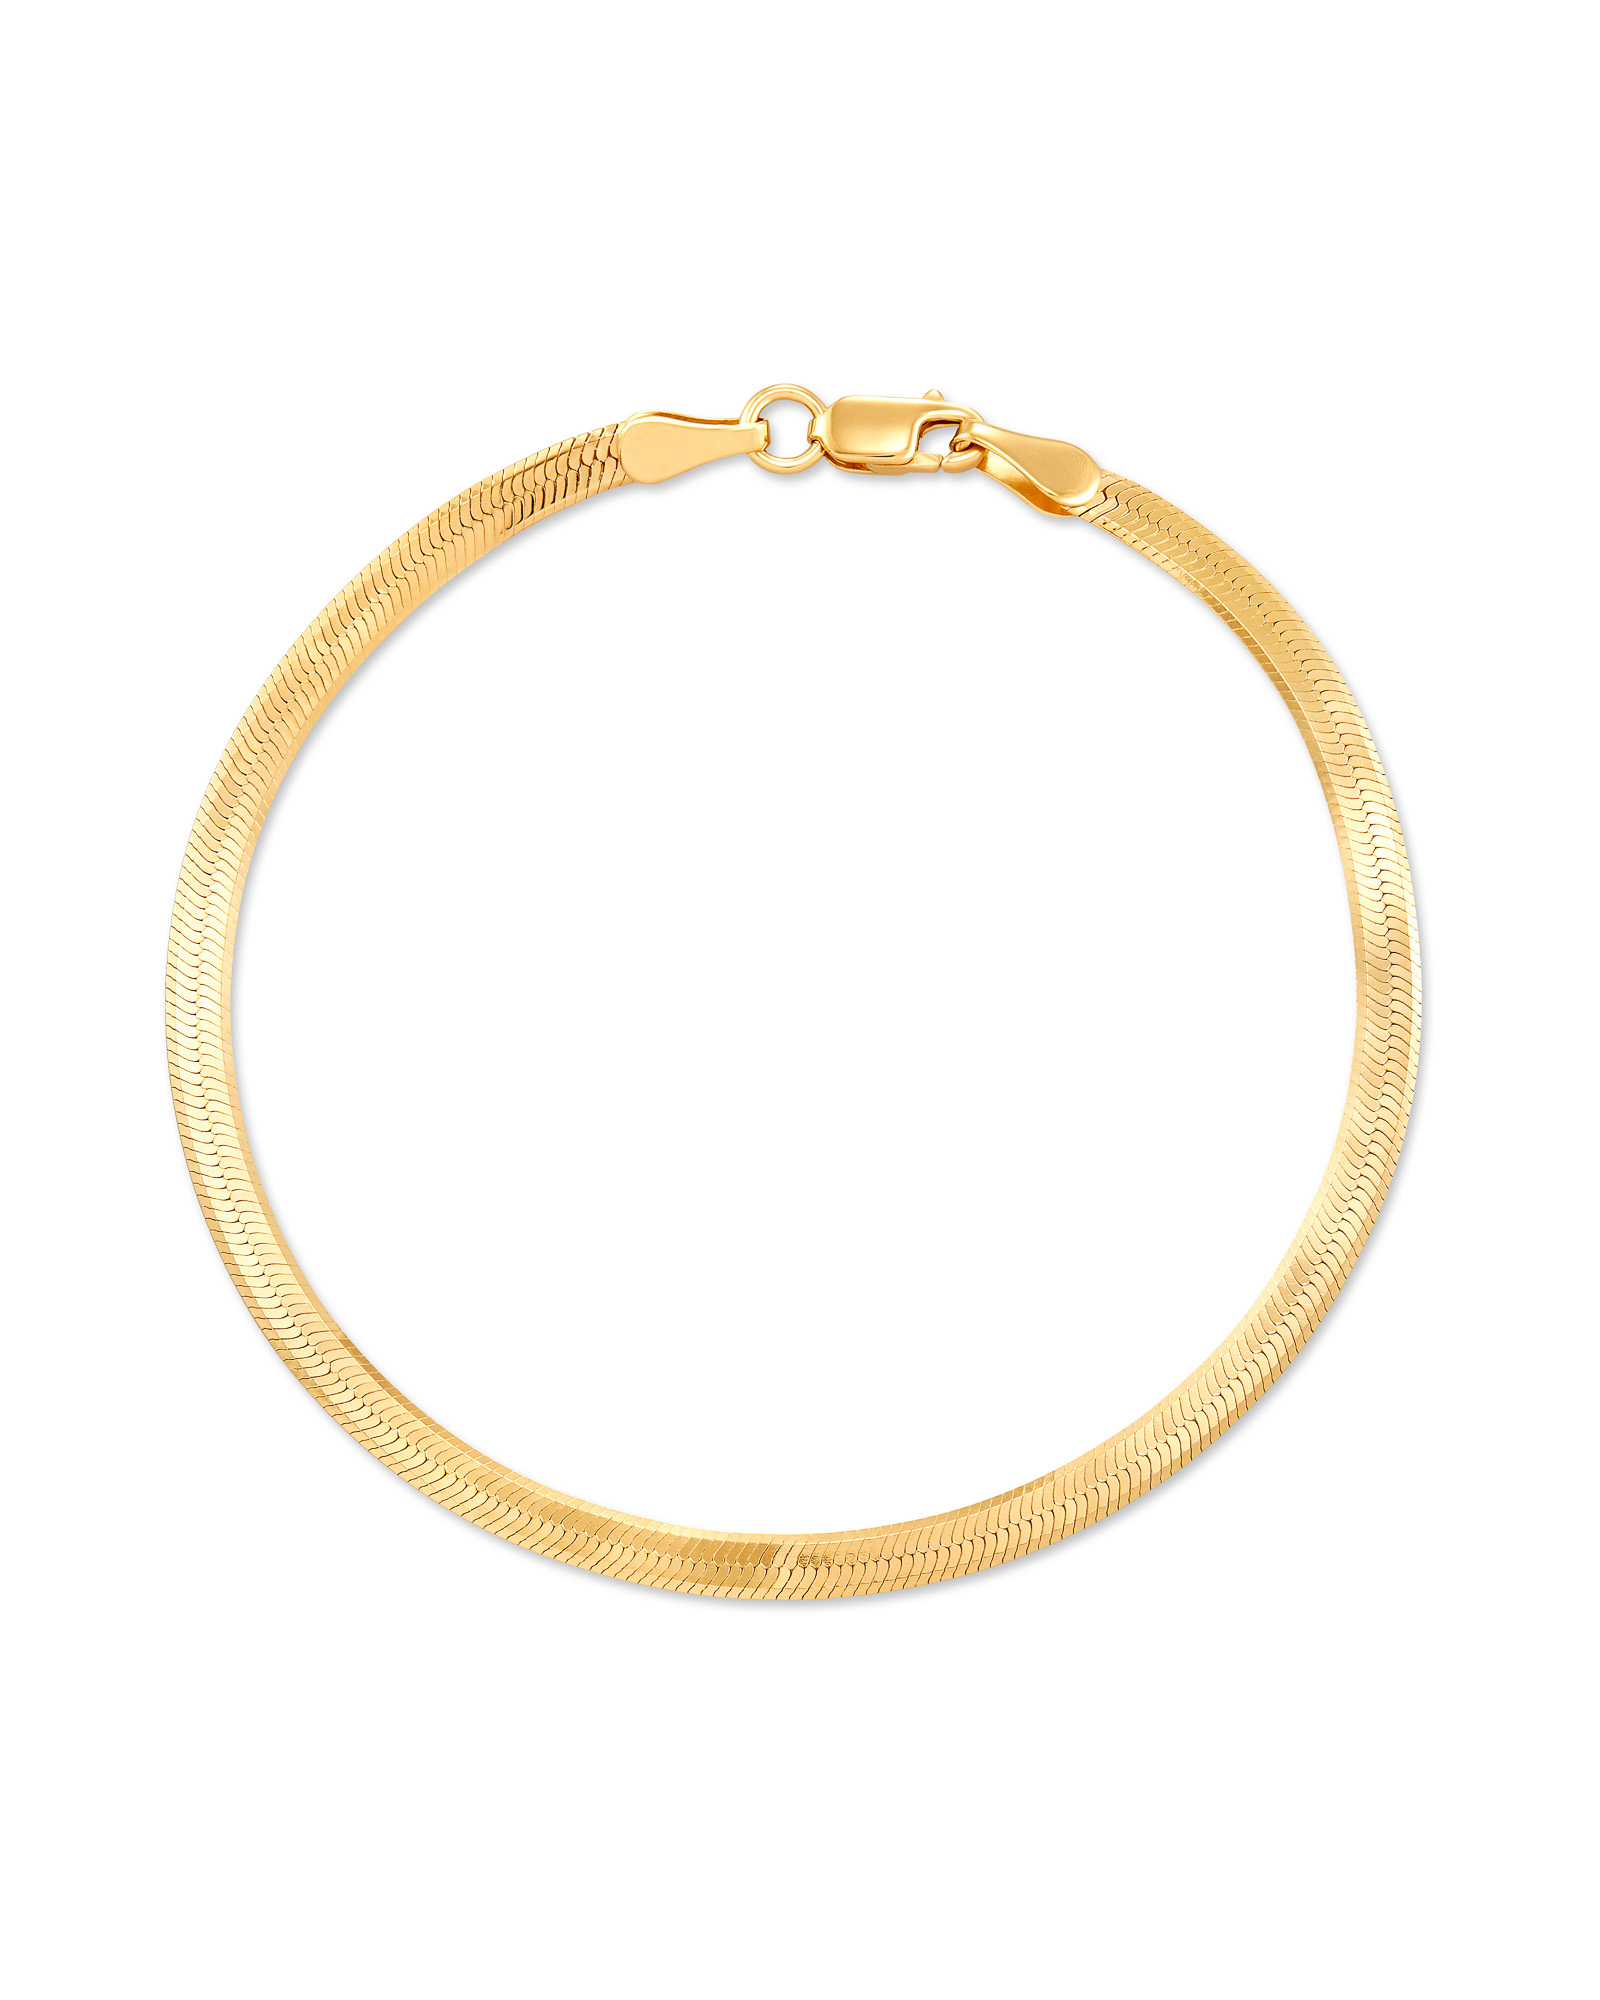 Gold Snake Chain Bracelet Waterproof | Rani & Co.